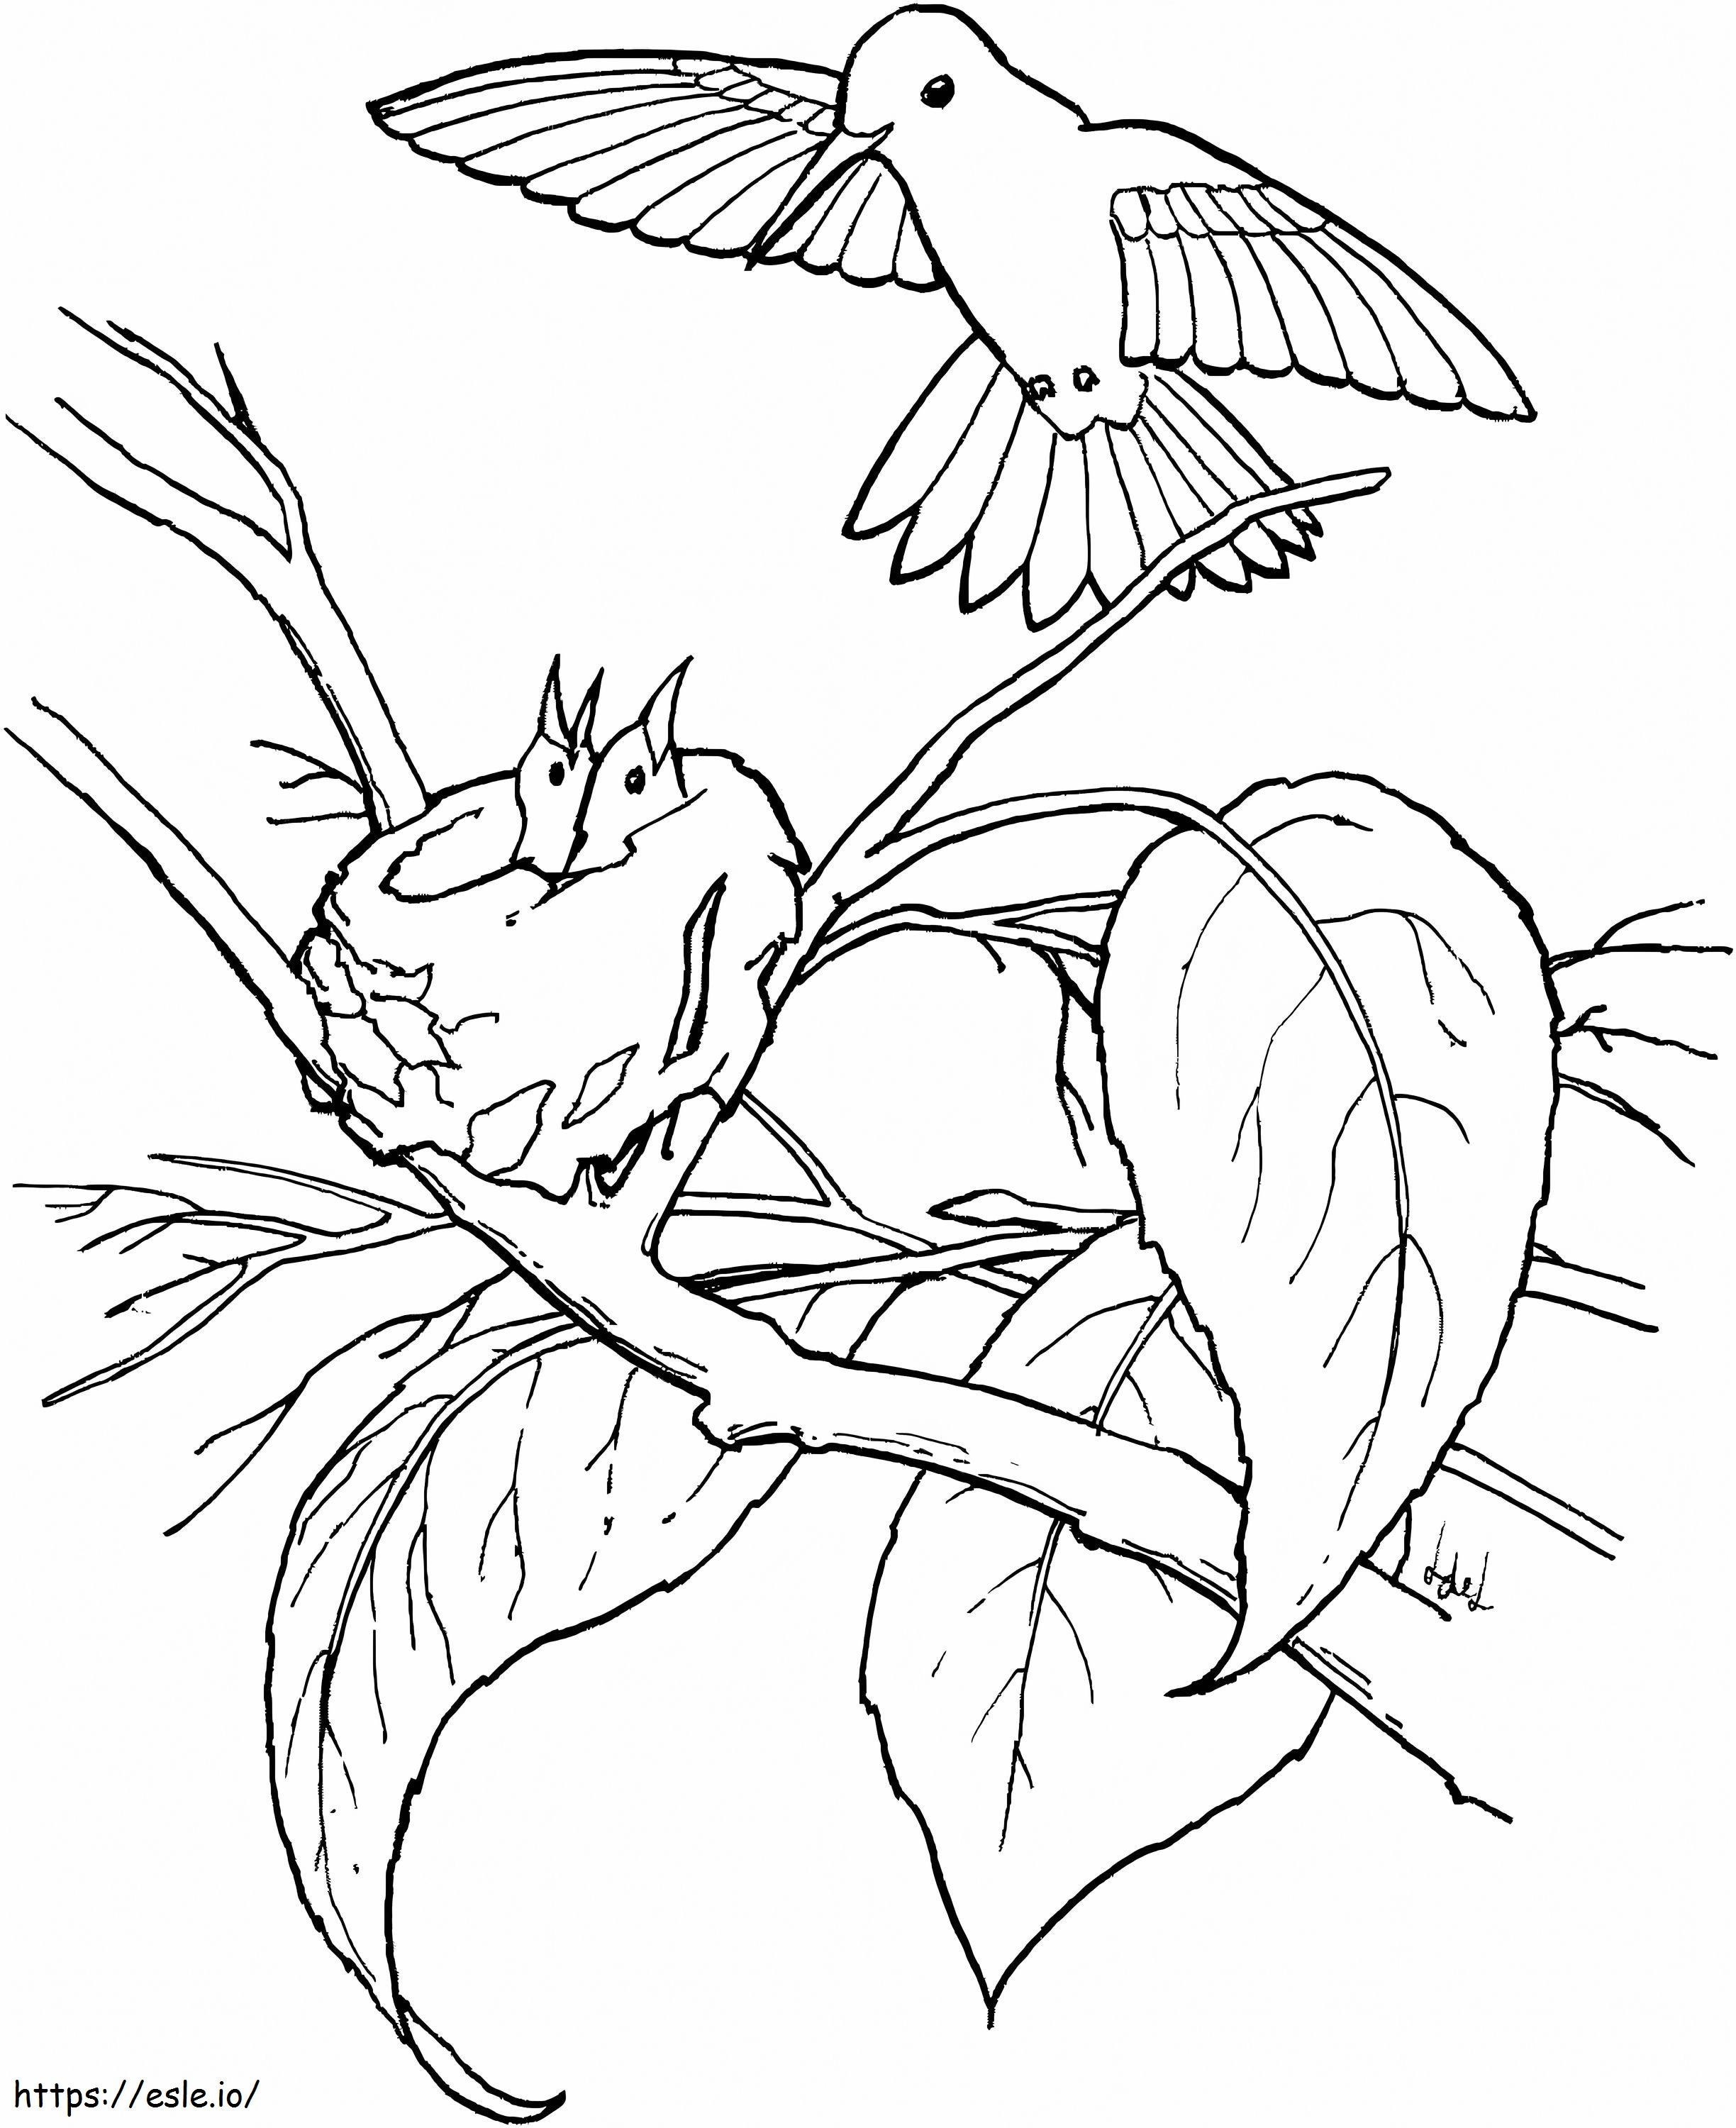 Kolibri Család a Fán kifestő